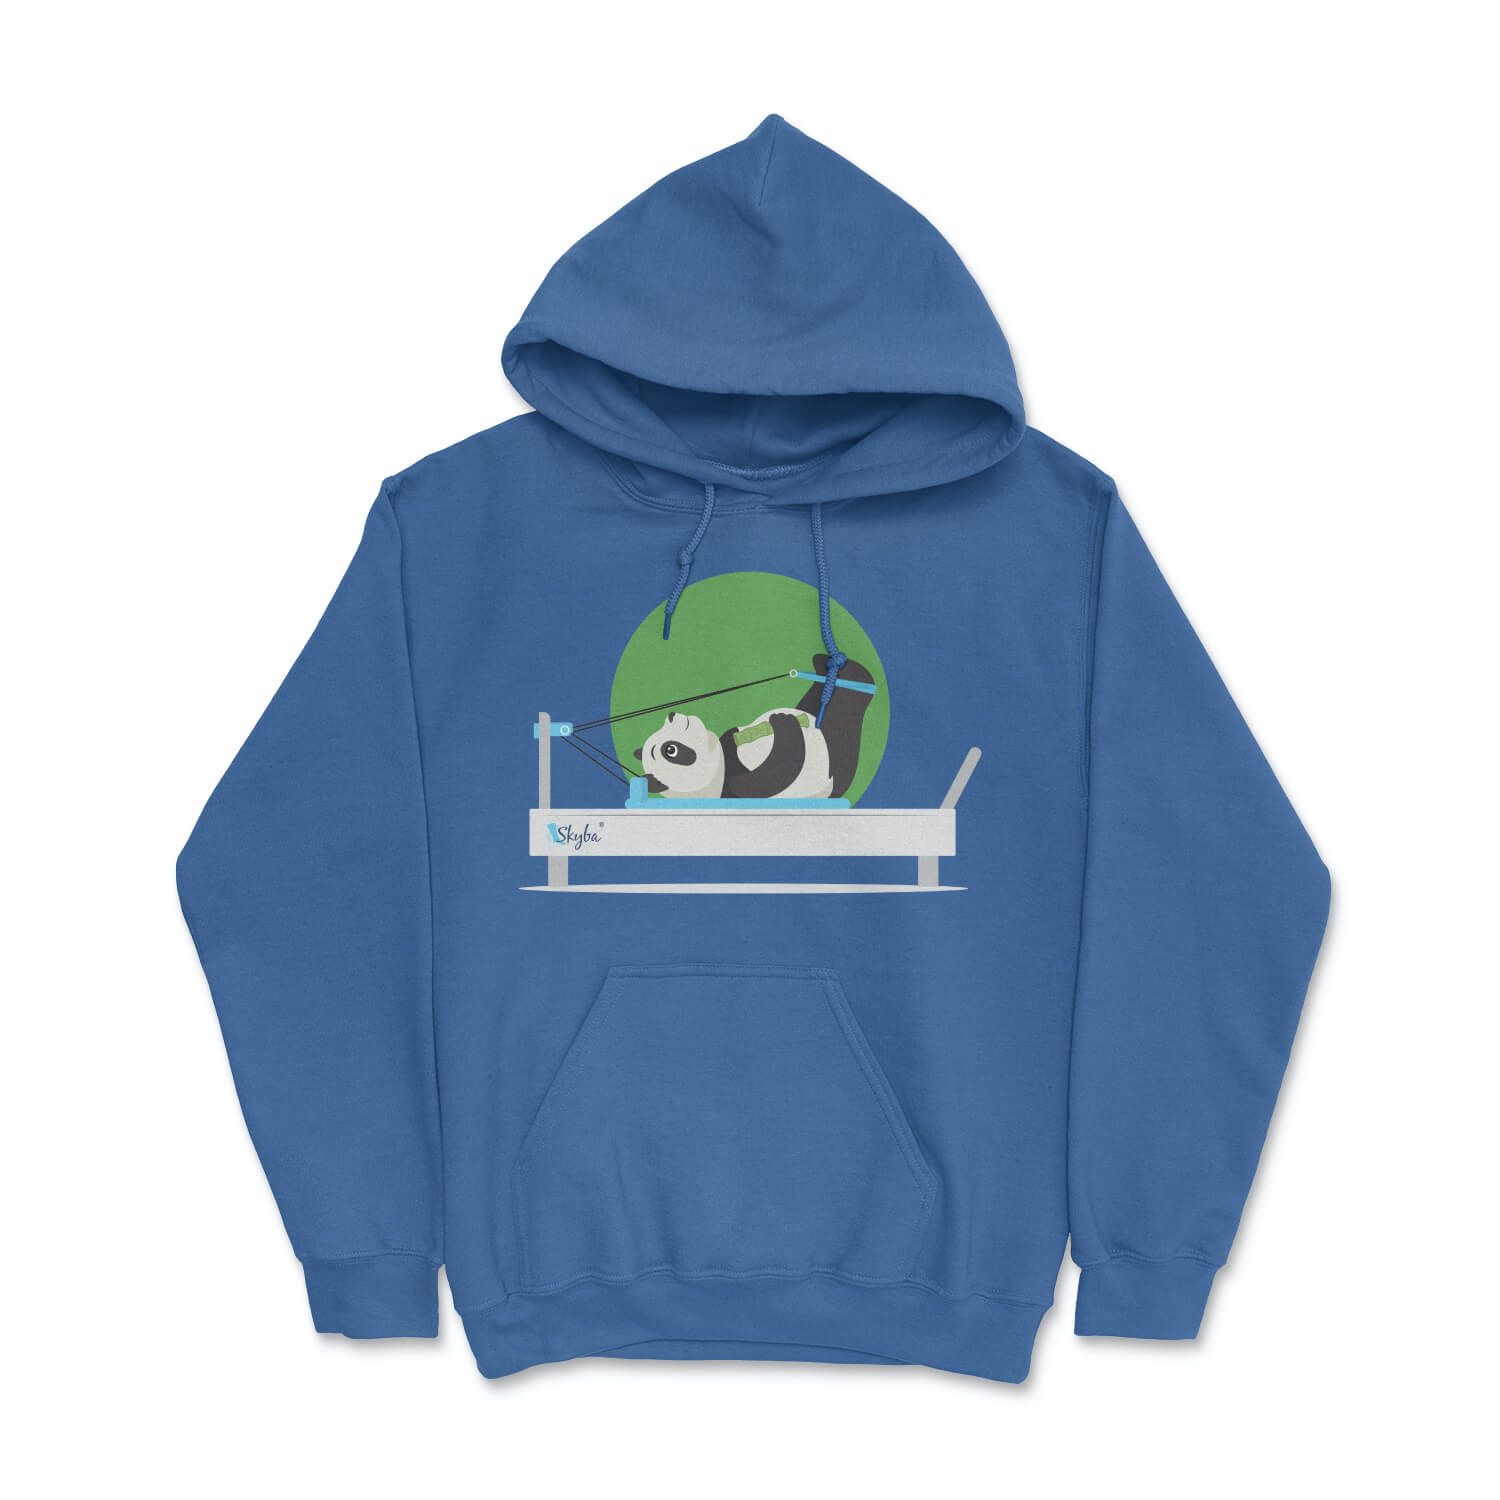 Focused Panda on Reformer - Cozy Hooded Sweatshirt Skyba Hoodie